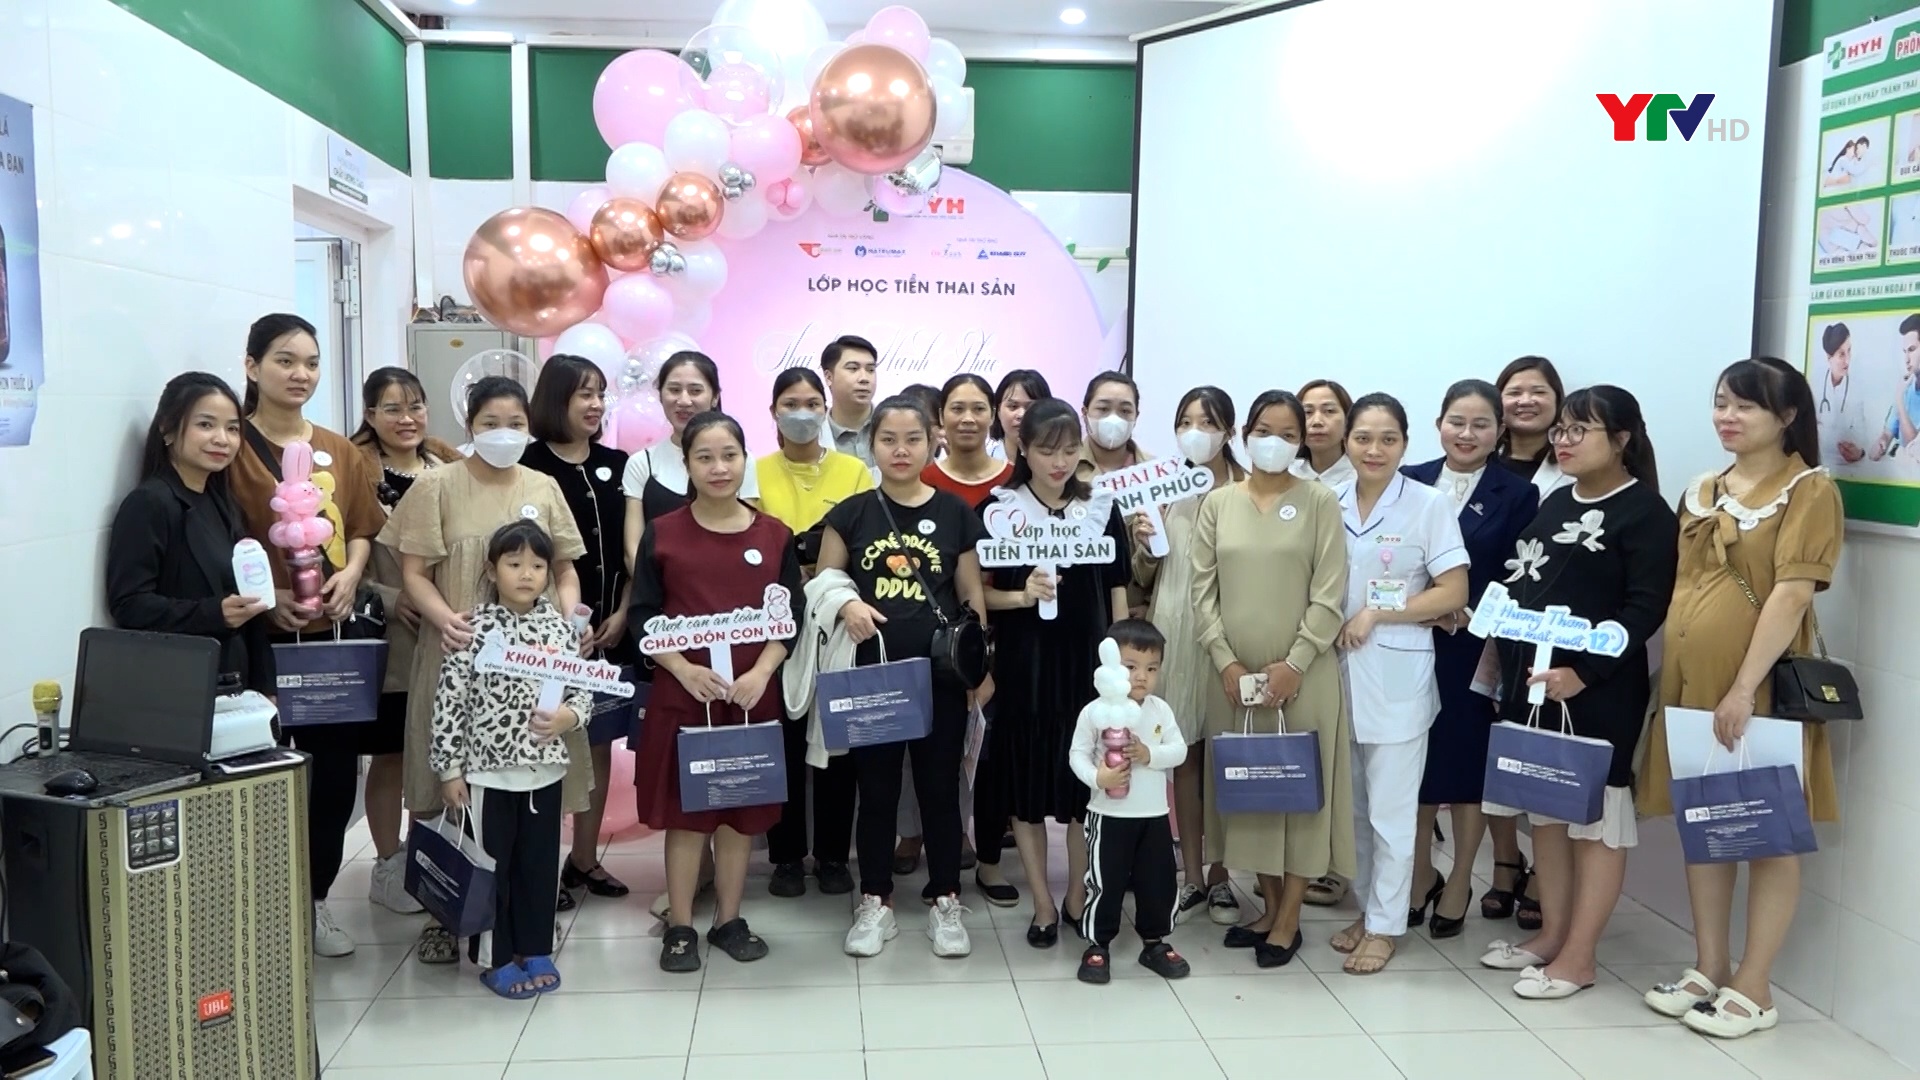 Lớp học tiền thai sản “Thai kỳ hạnh phúc – vượt cạn an toàn”